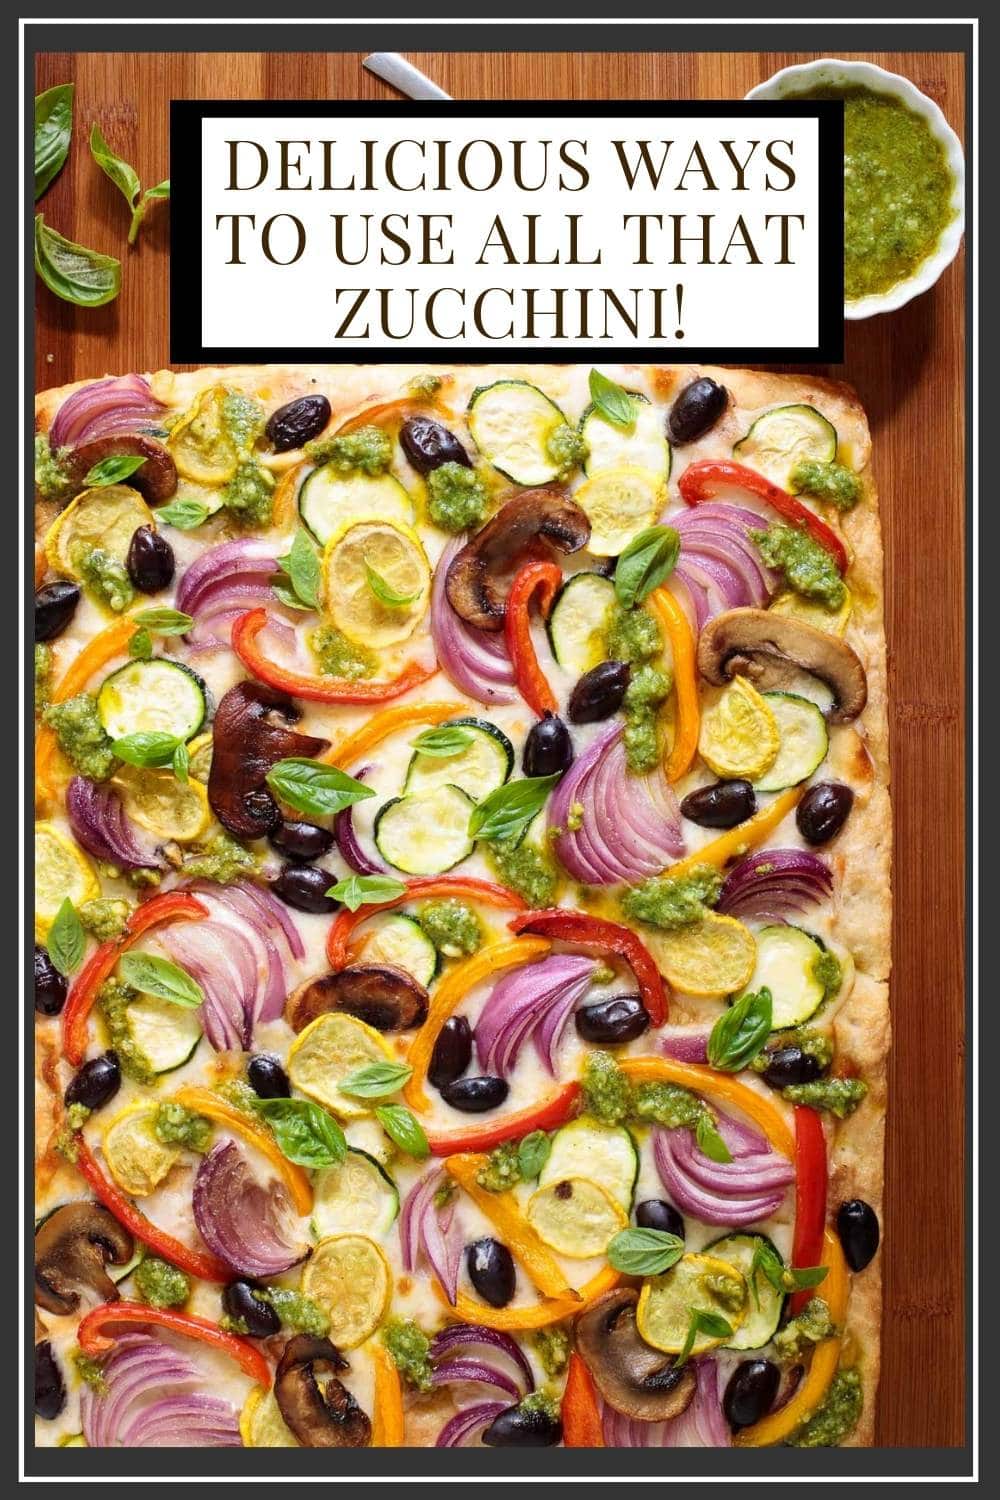 Overrun with Zucchini? 10 Delicious Recipes to Use Your Zucchini Stash